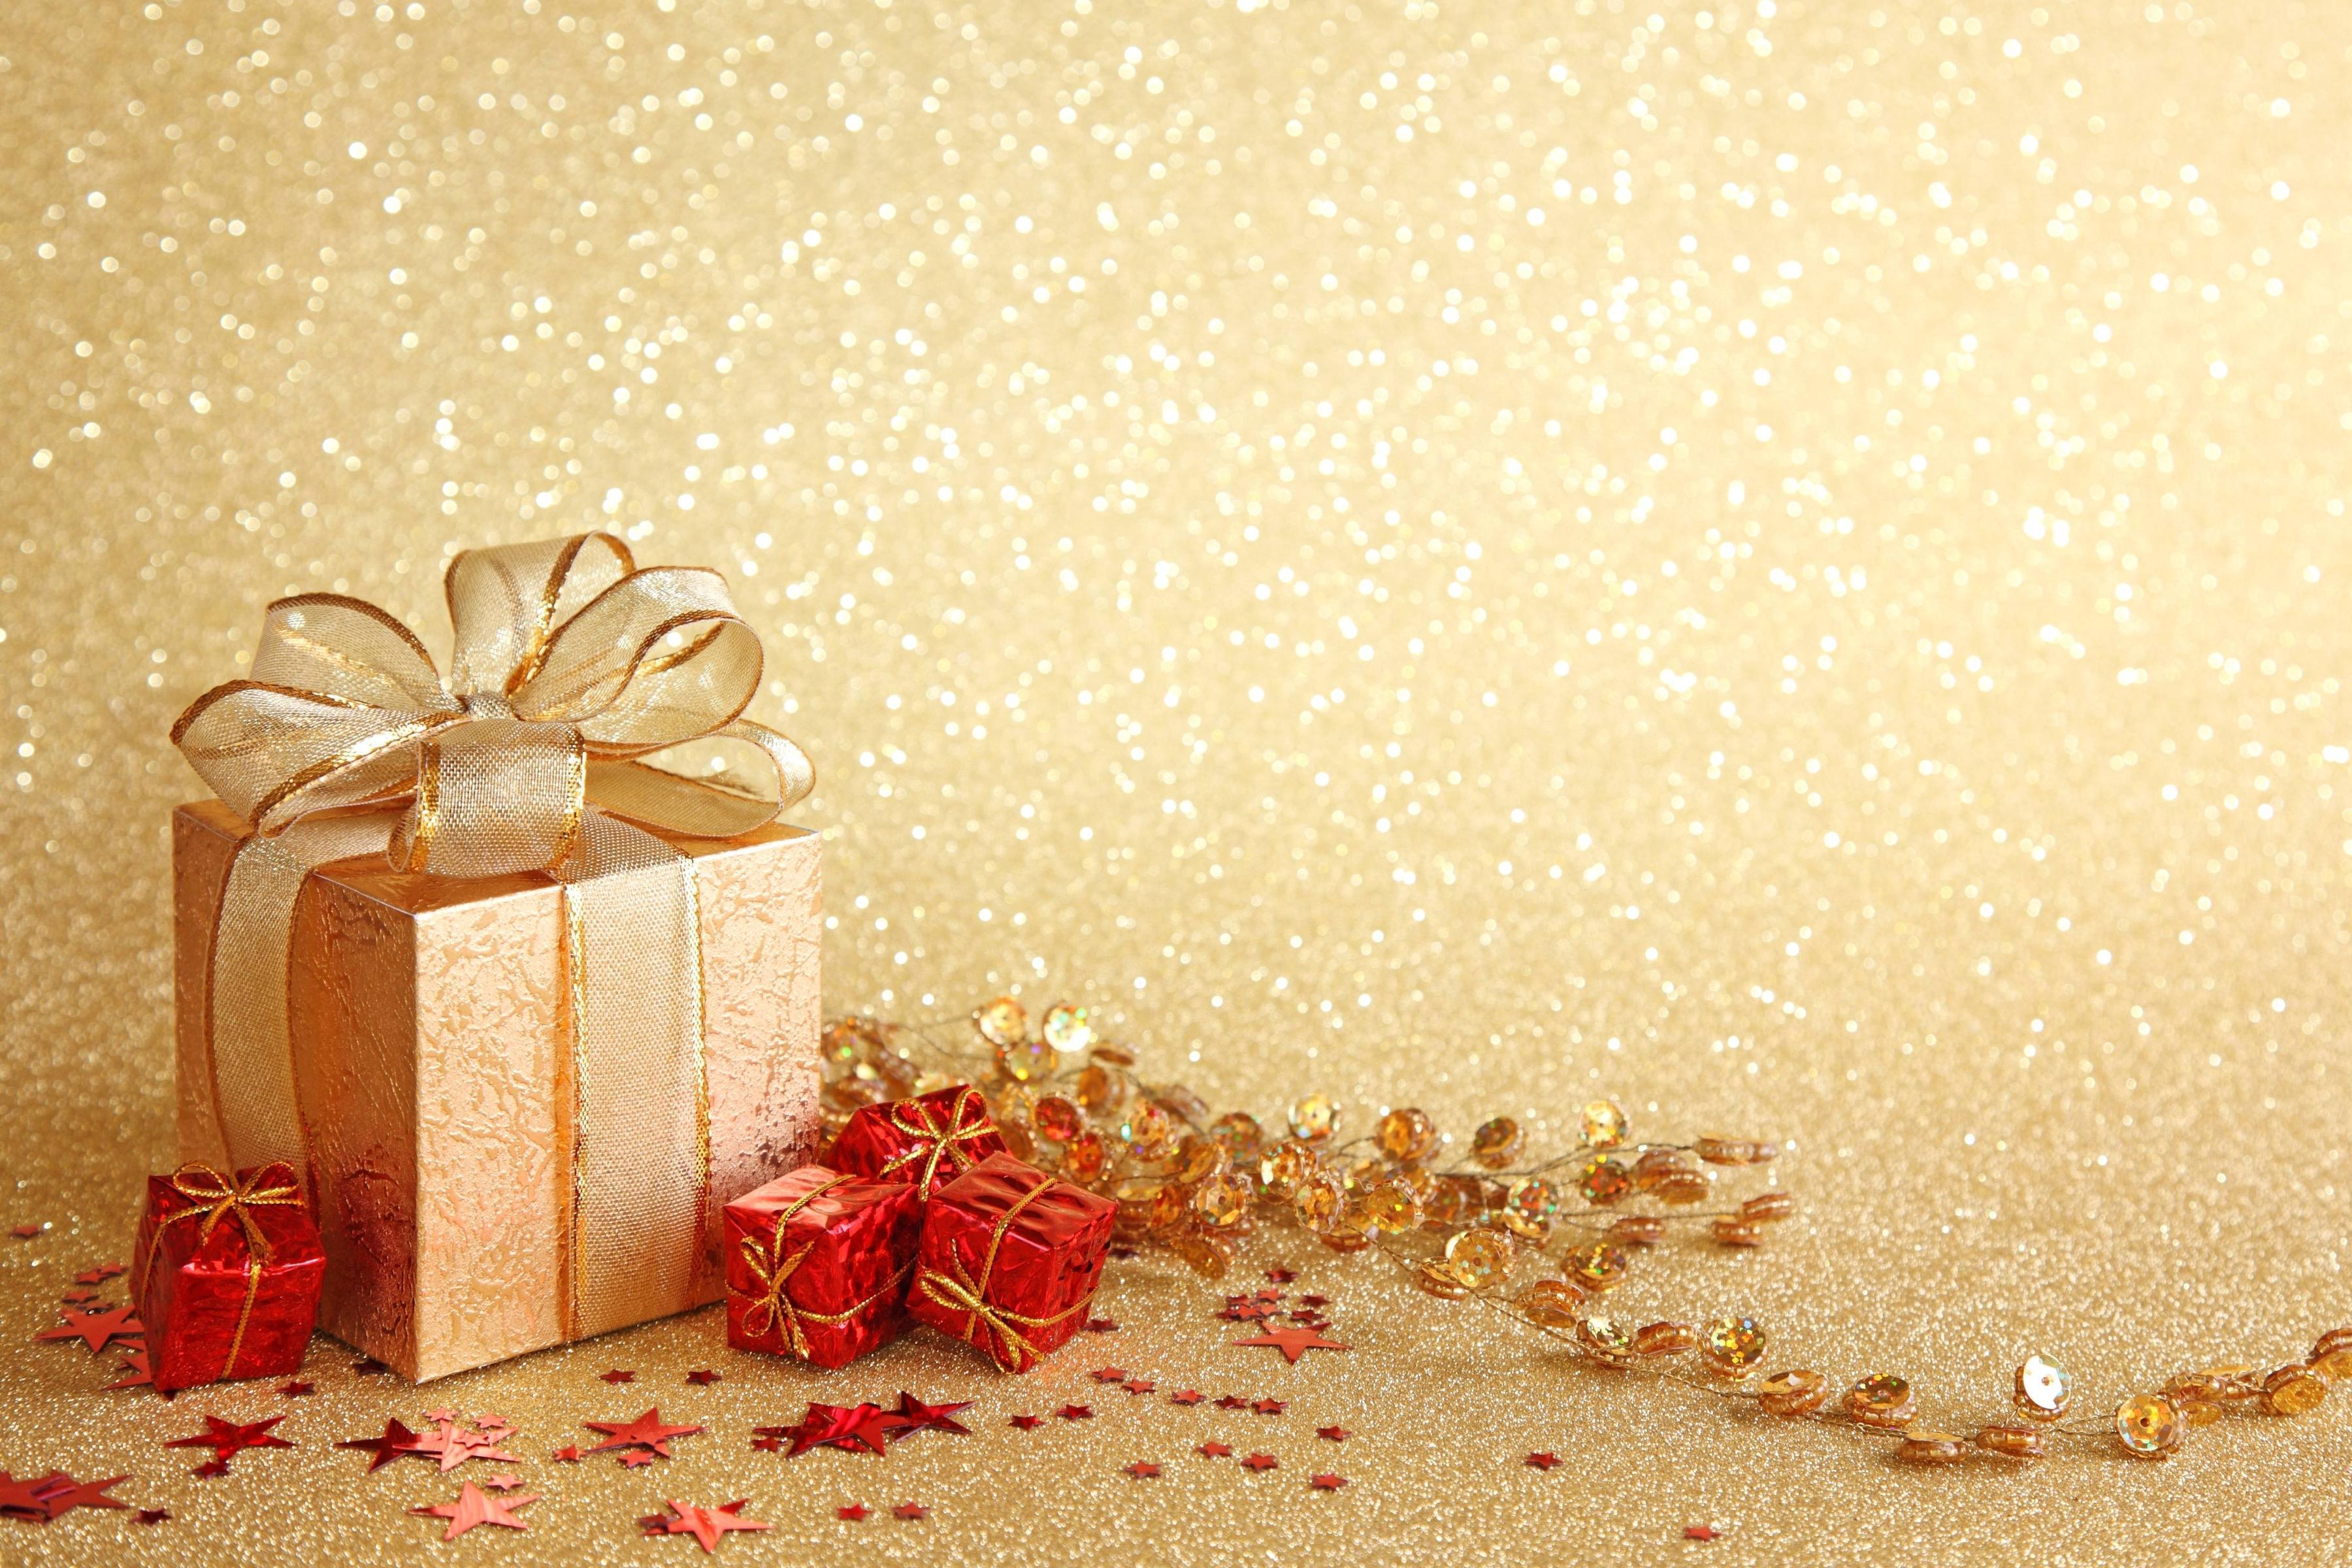 Gift, stars, christmas, ribbon wallpaper and image